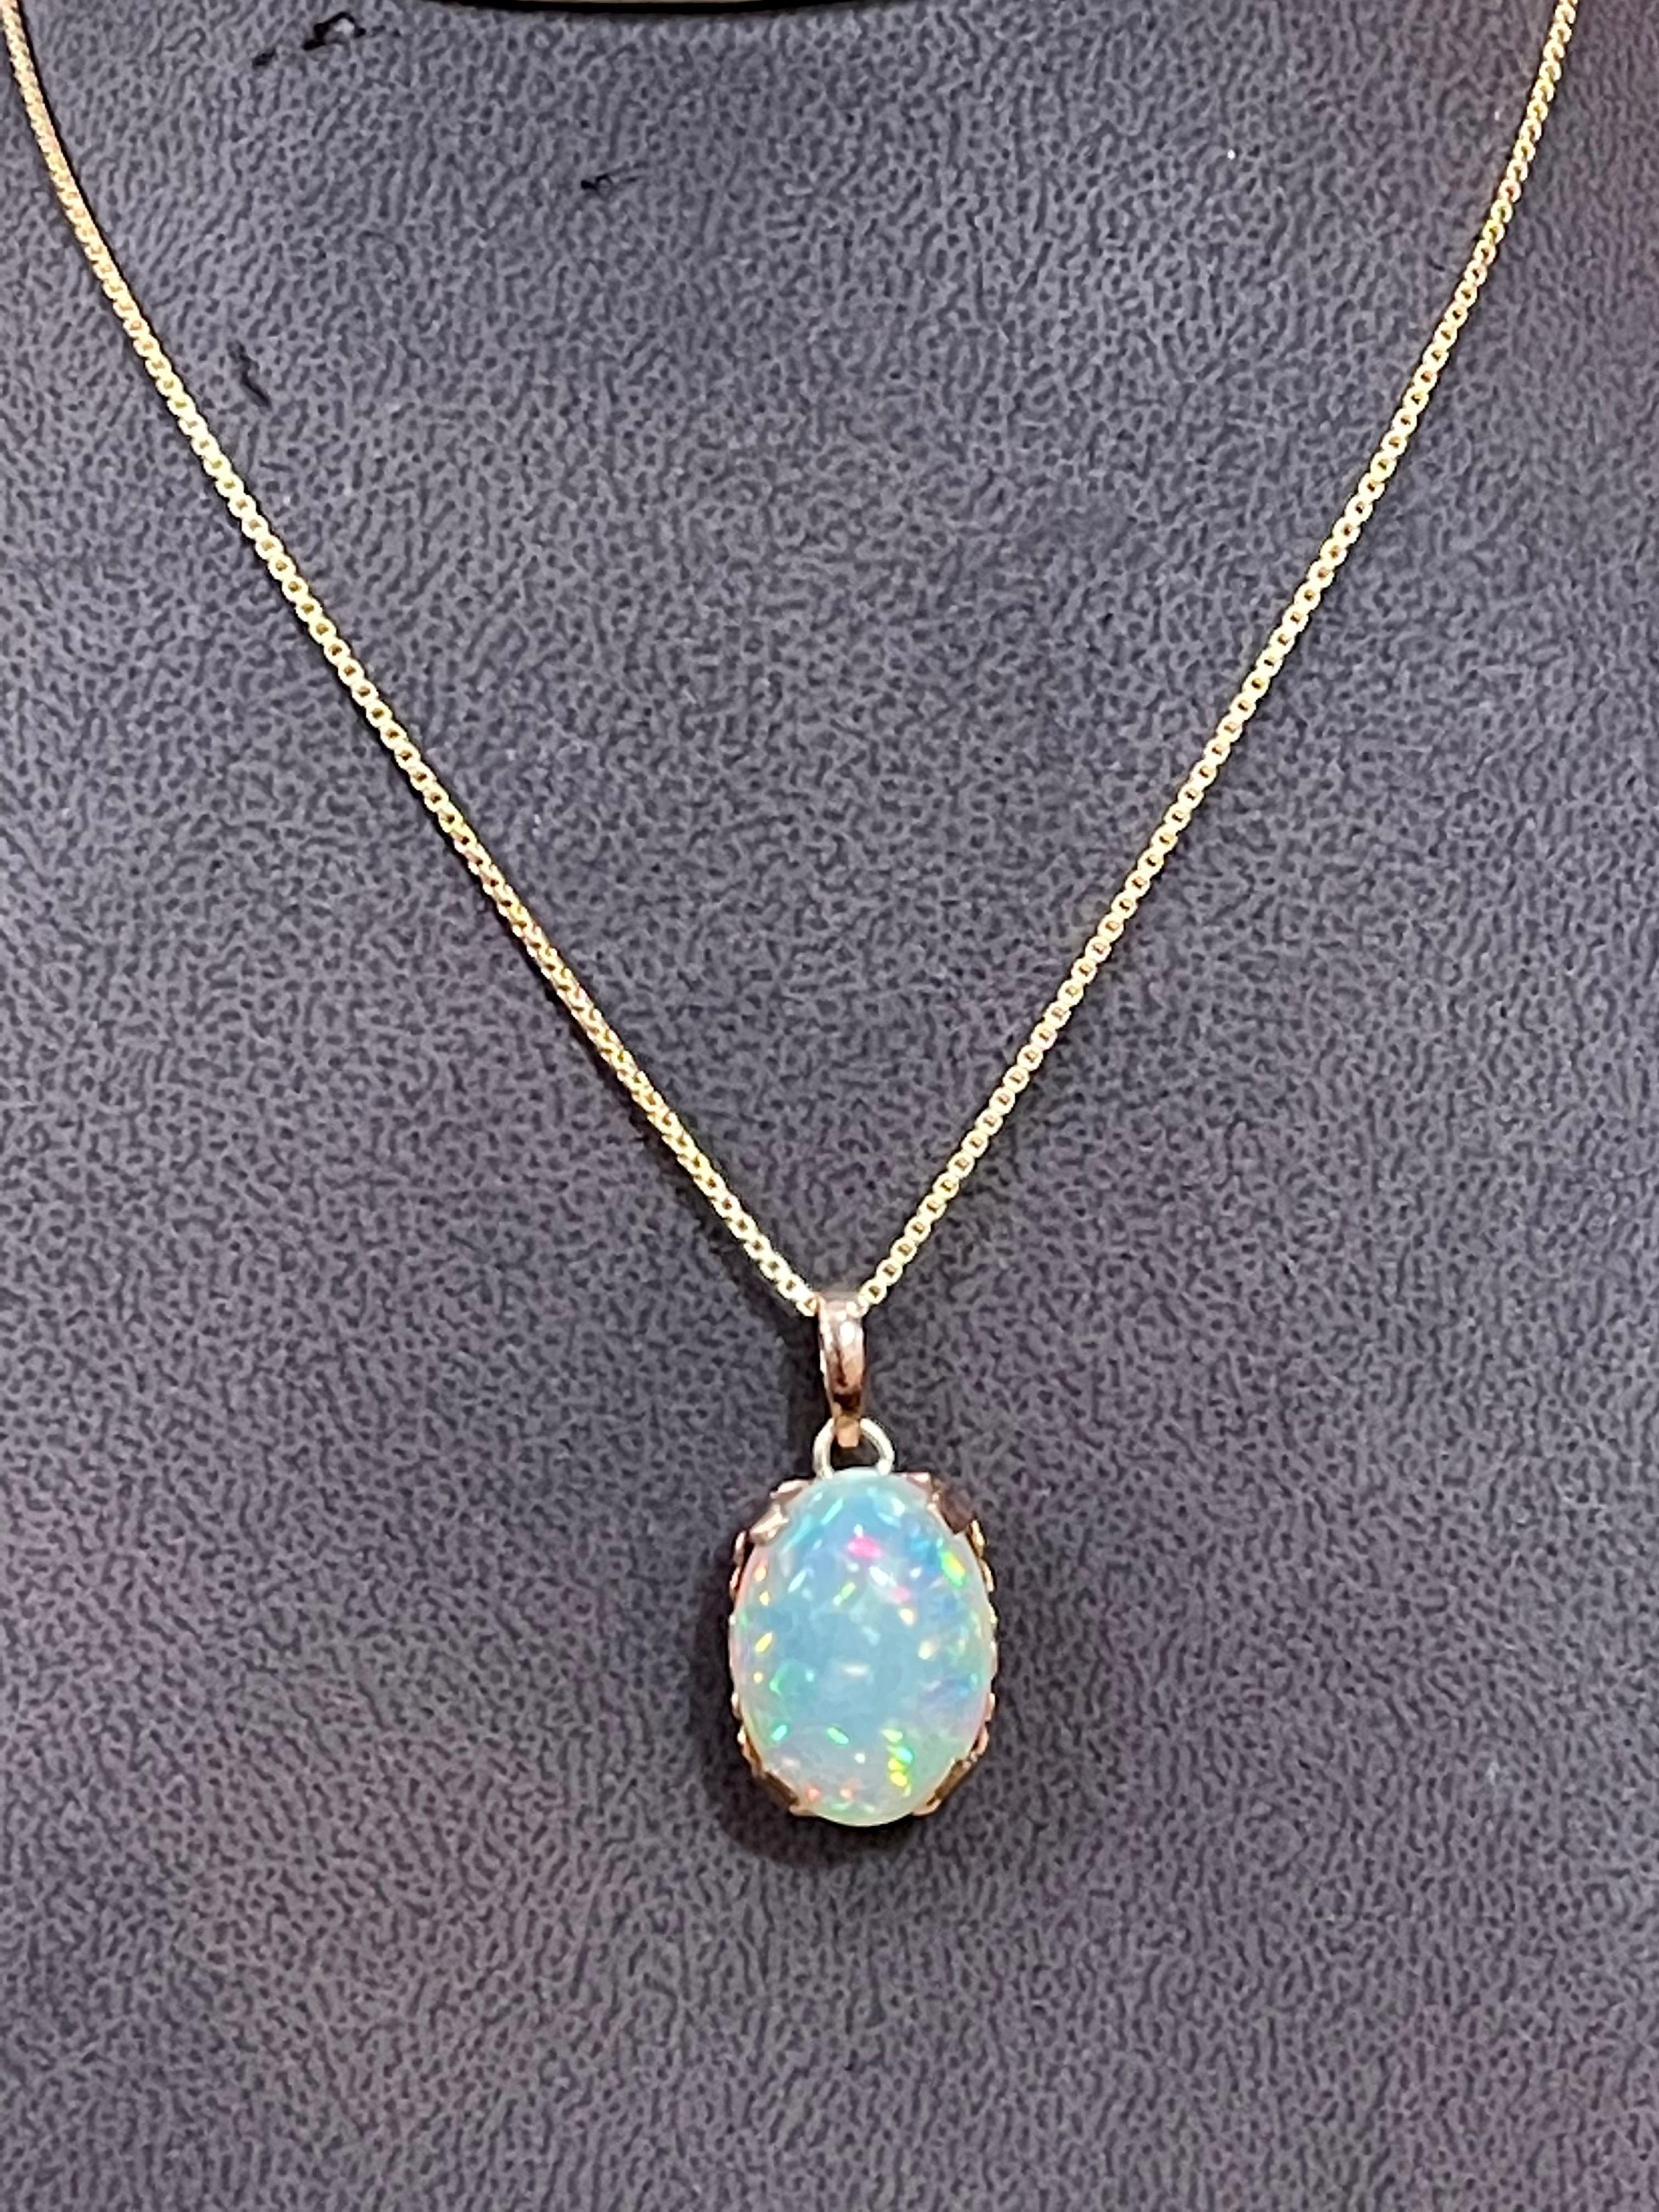 9 Carat Oval Ethiopian Opal Pendant / Necklace 18 Karat + 18 Kt Gold Chain 10